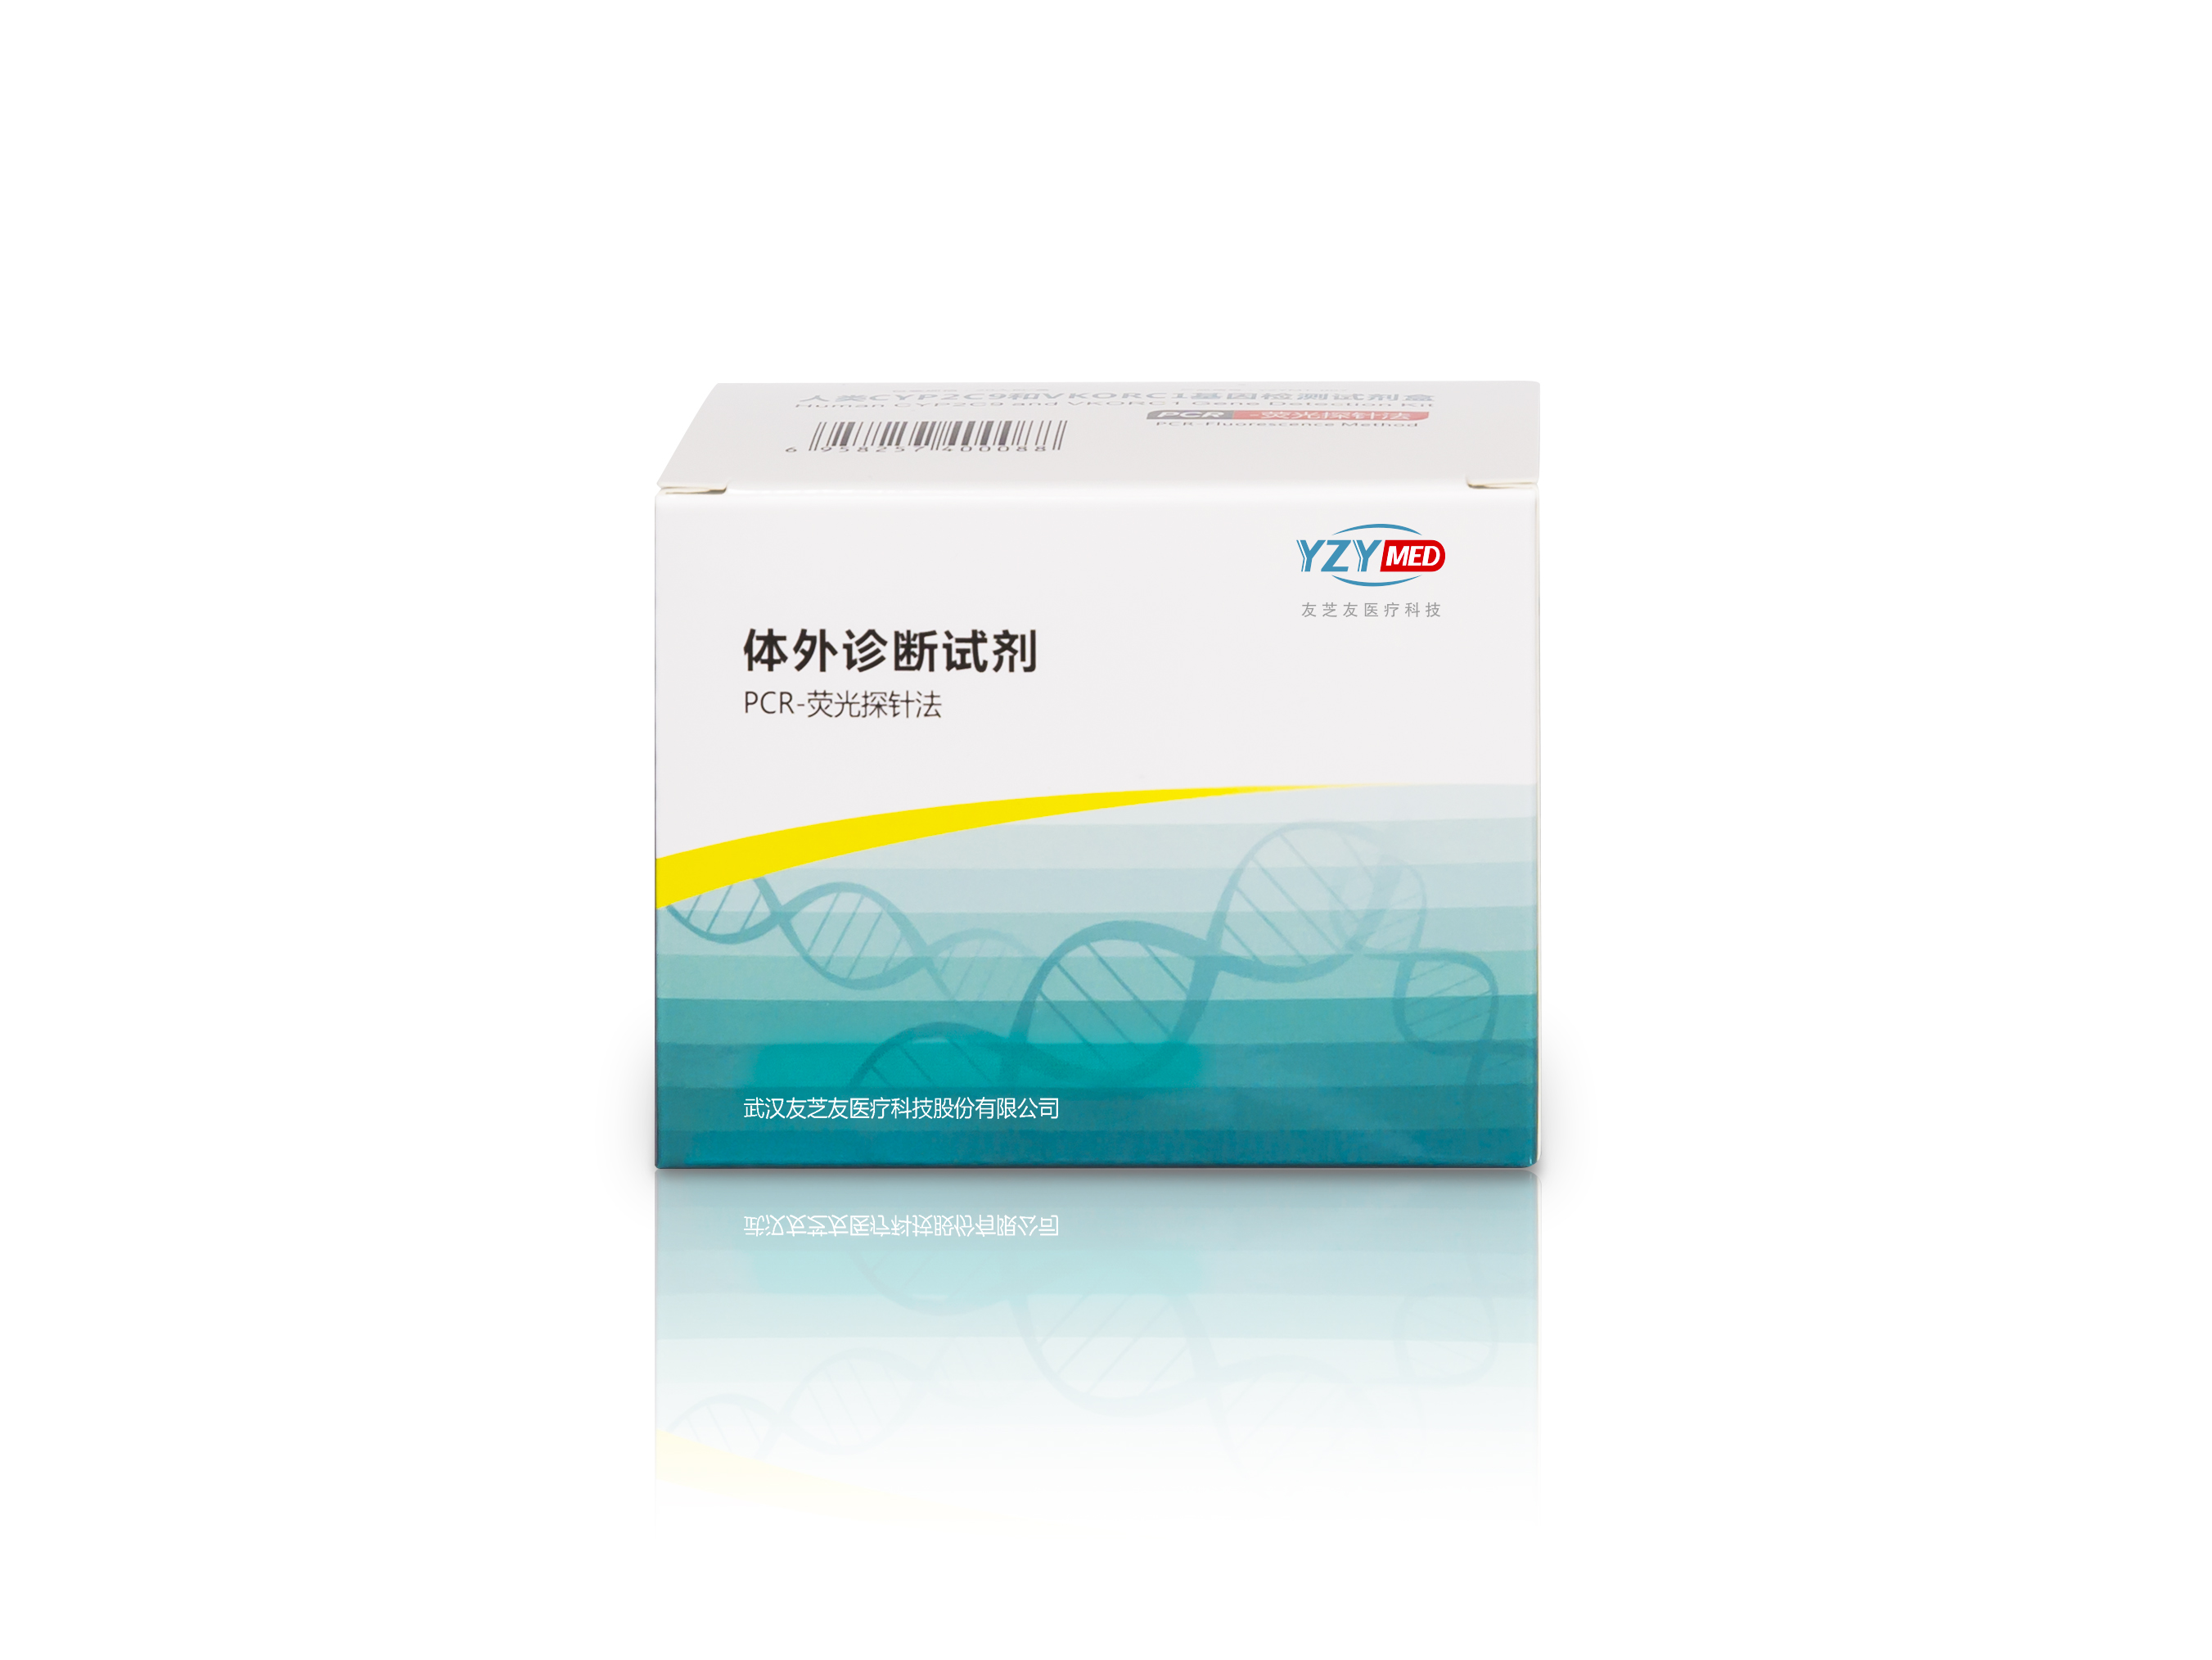 【友芝友】人类CYP2C9和VKORC1基因检测试剂盒(PCR-荧光探针法)